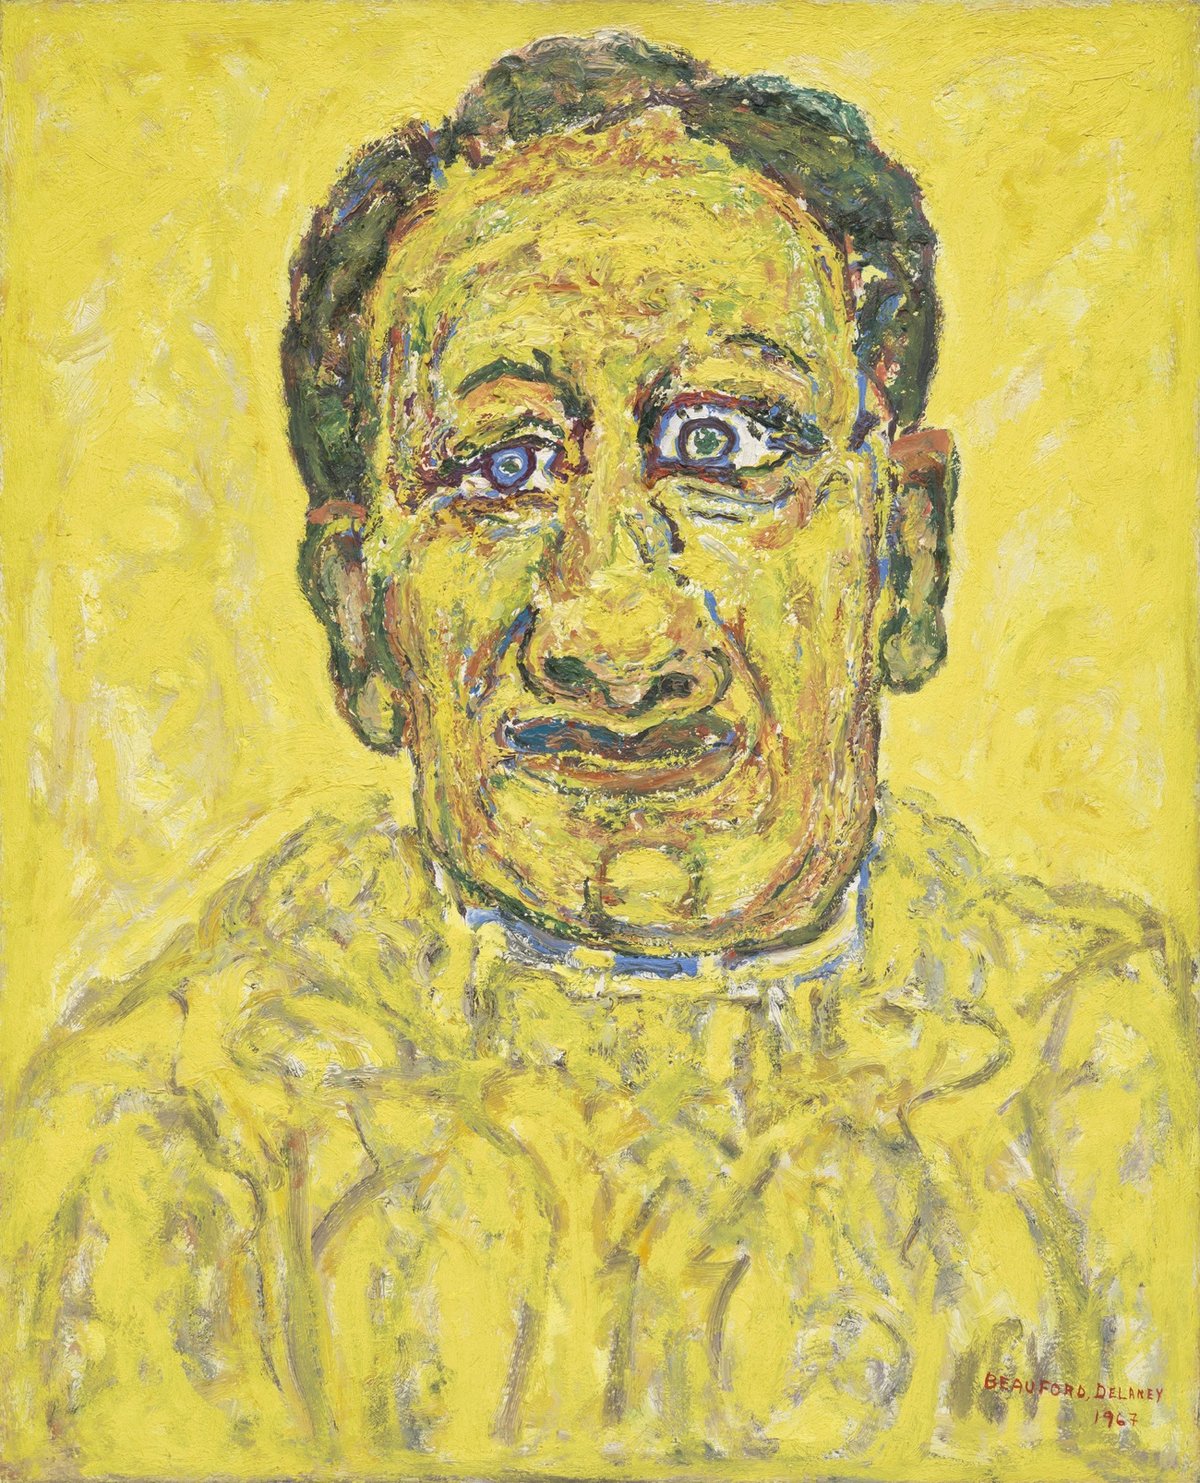 Beauford Delaney's Portrait of Howard Swanson (1967)